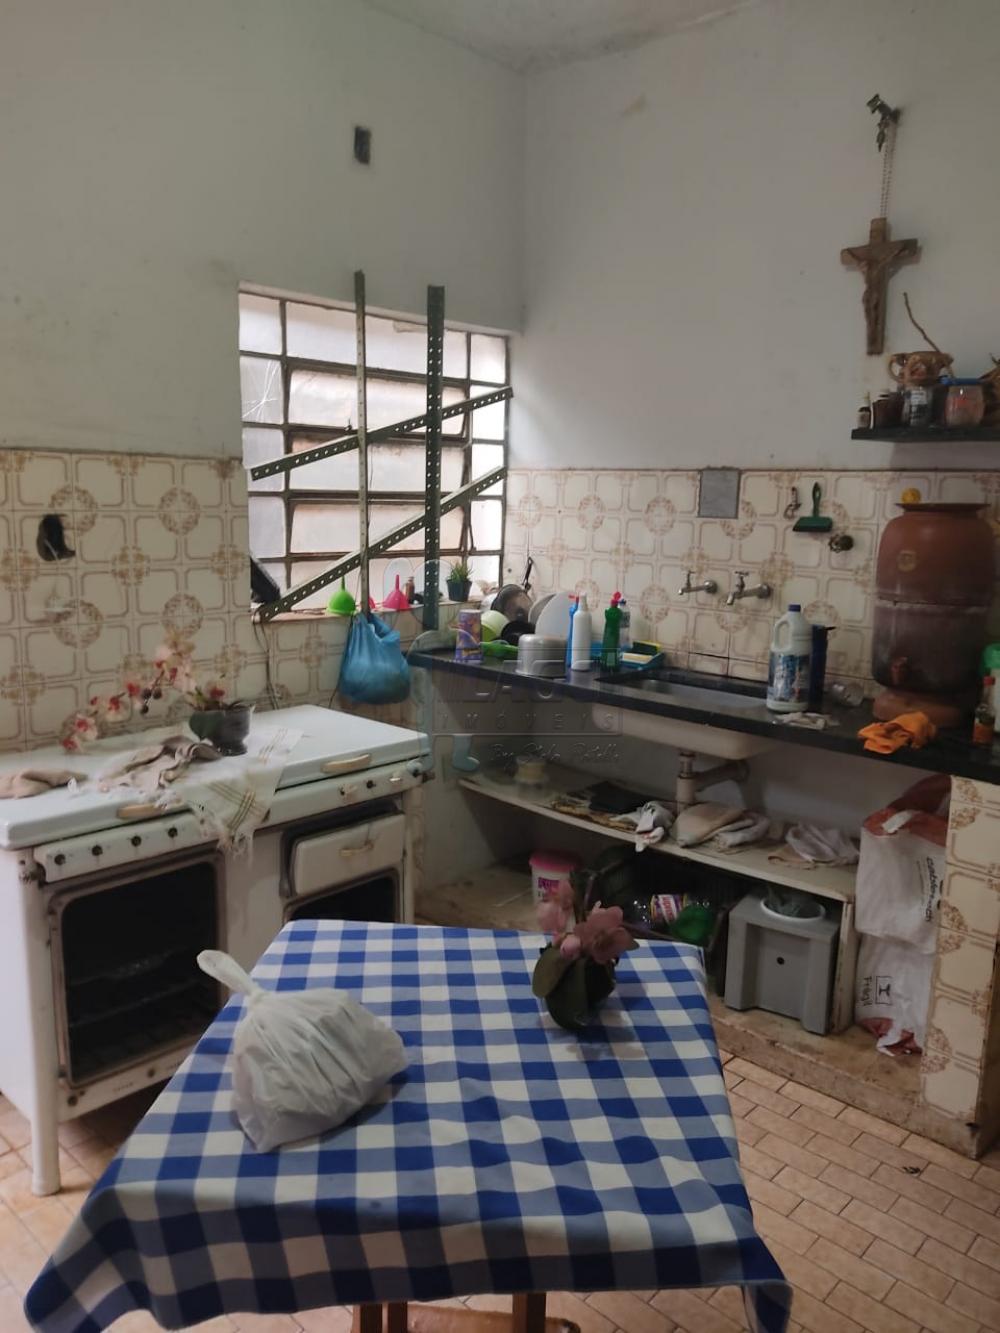 Comprar Casas / Padrão em Ribeirão Preto R$ 630.000,00 - Foto 3